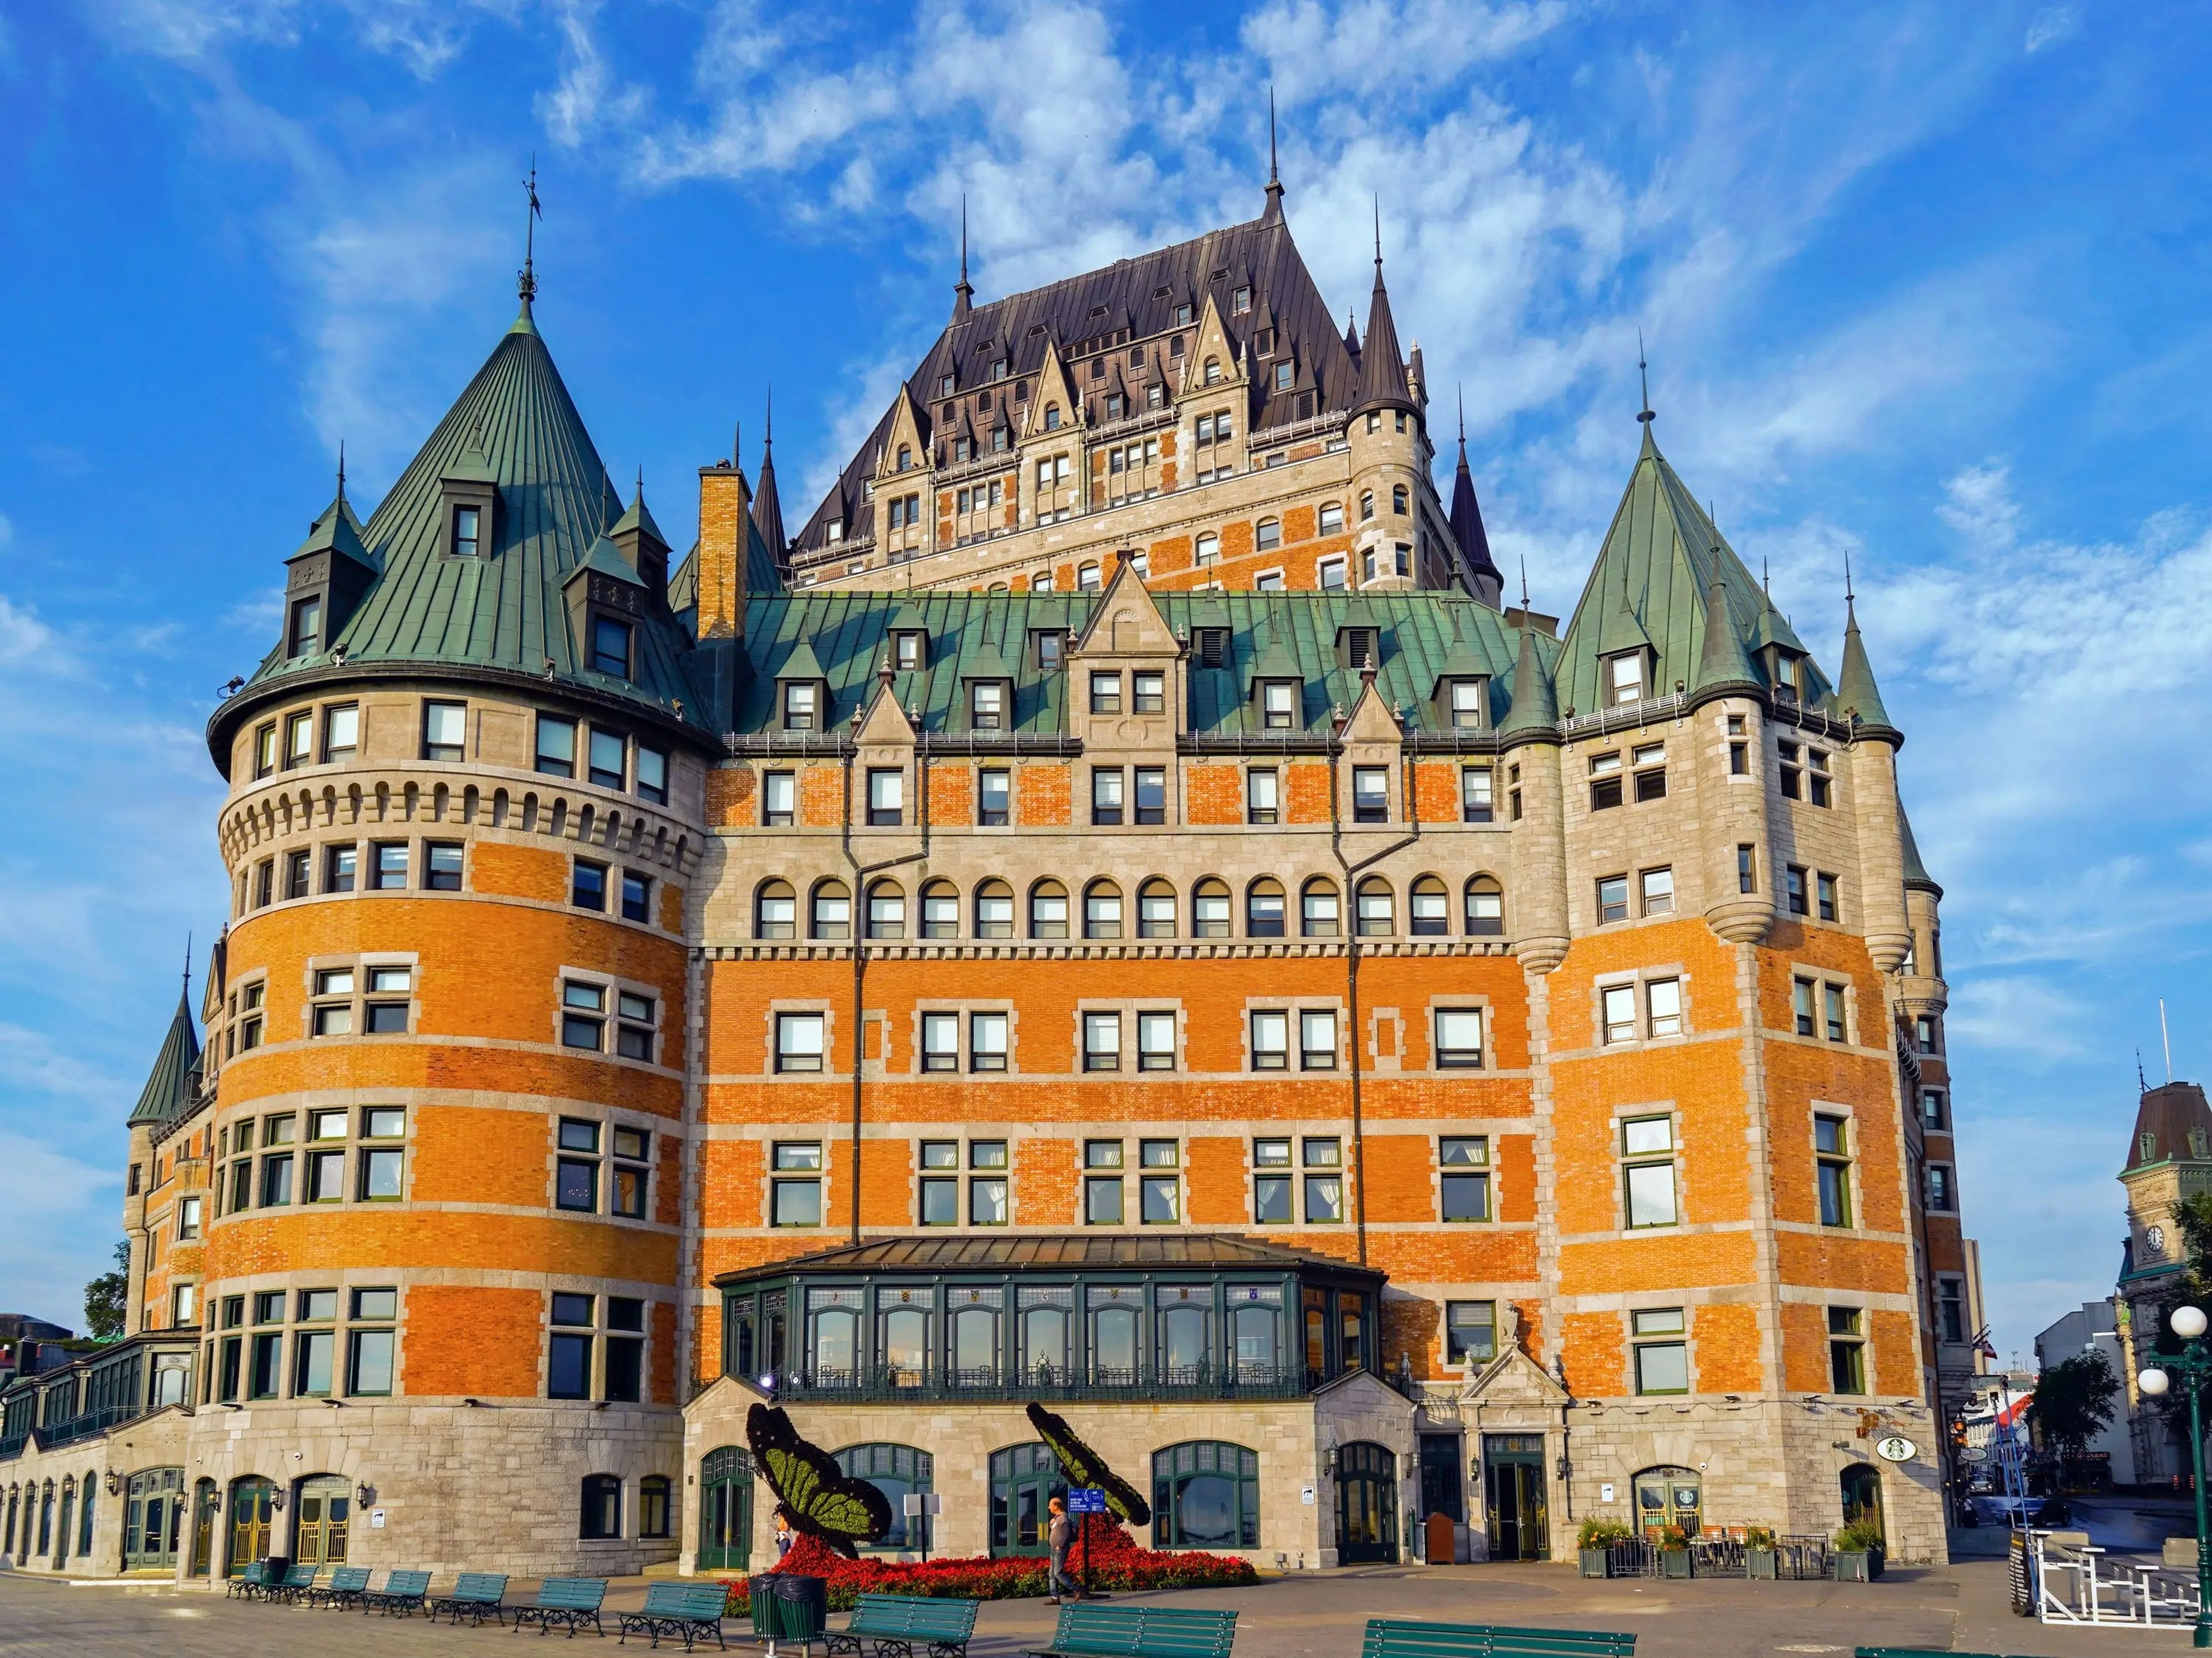 Fairmont hotel in Quebec